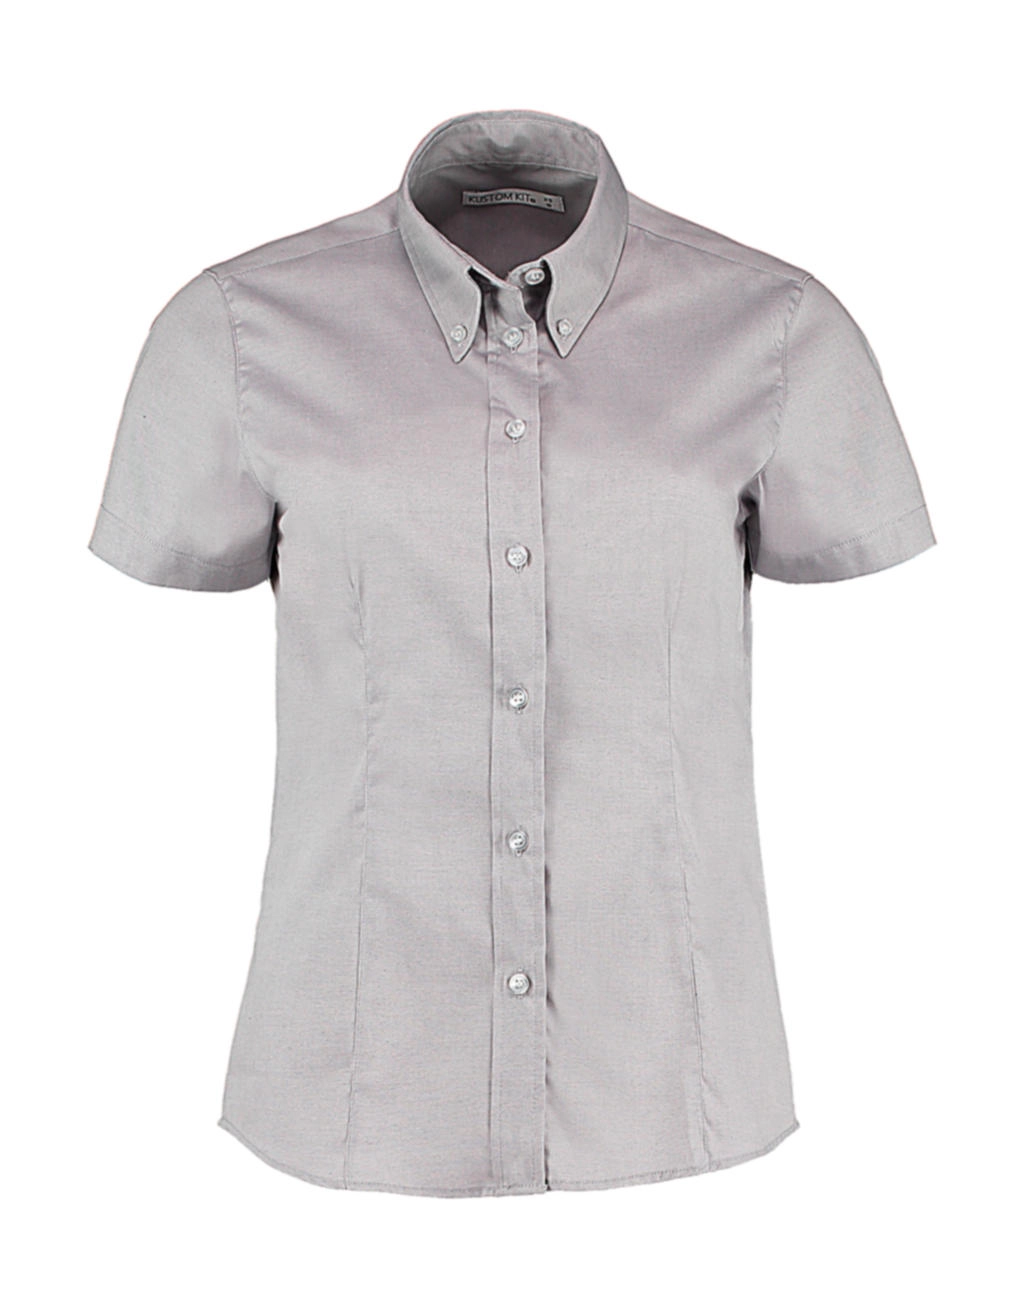 Women`s Tailored Fit Premium Oxford Shirt SSL zum Besticken und Bedrucken in der Farbe Silver Grey mit Ihren Logo, Schriftzug oder Motiv.